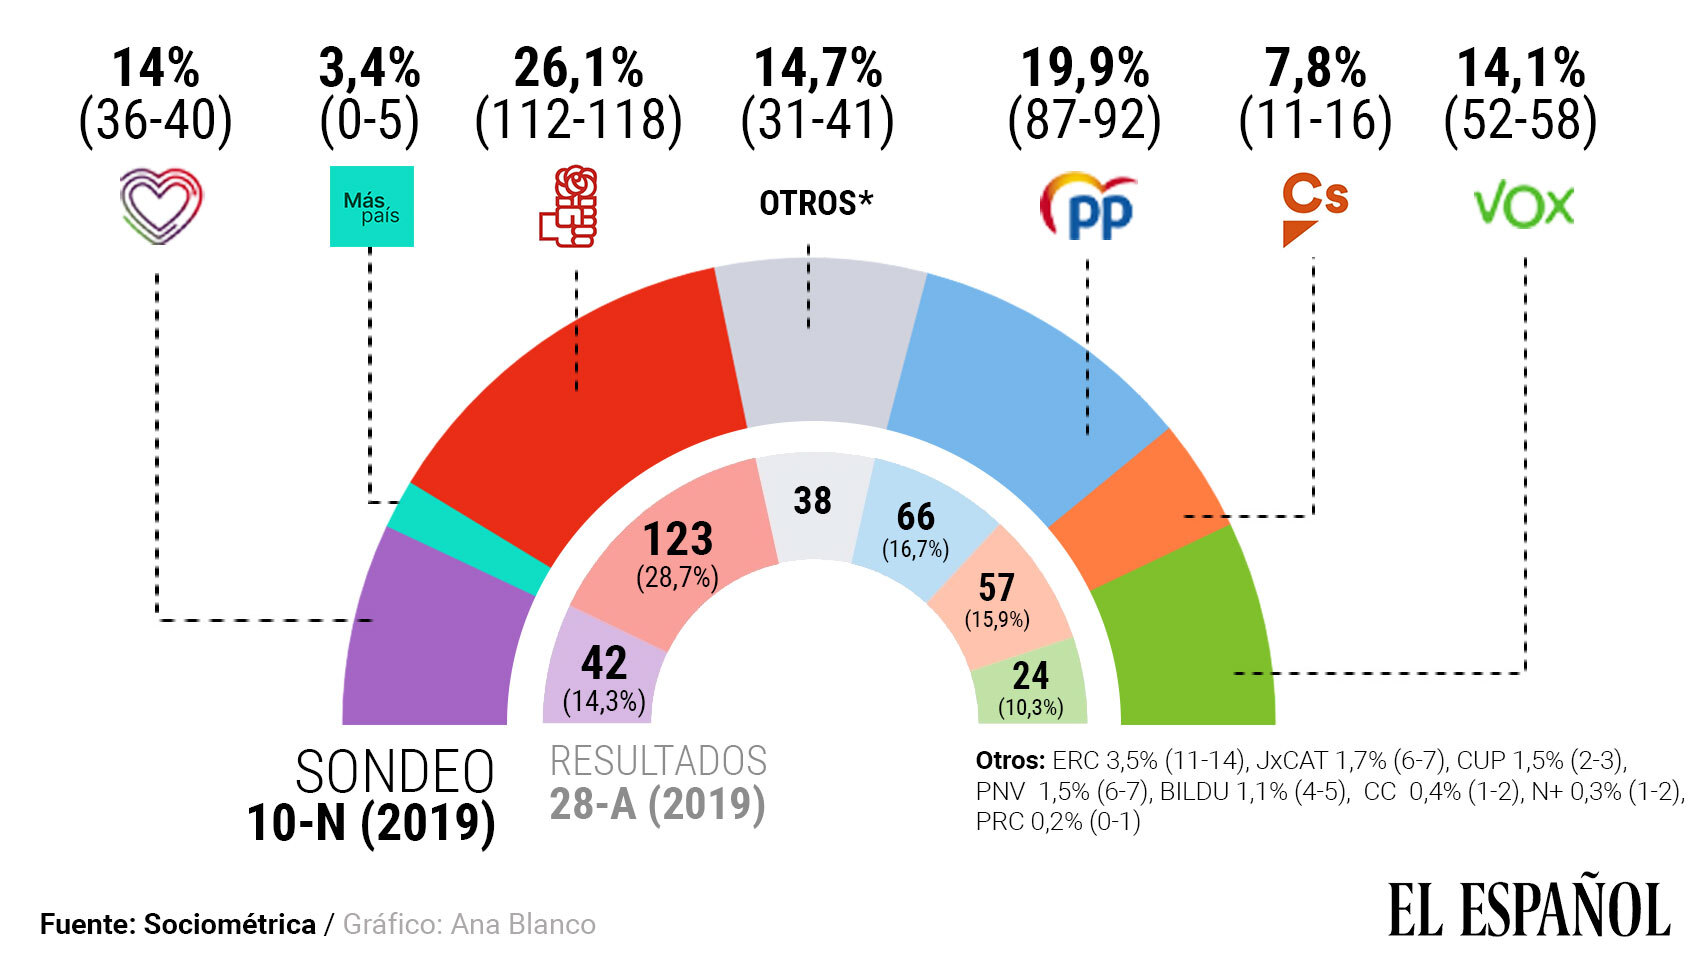 El PSOE vuelve a ganar pero ni las izquierdas ni las derechas se acercan a la mayoría